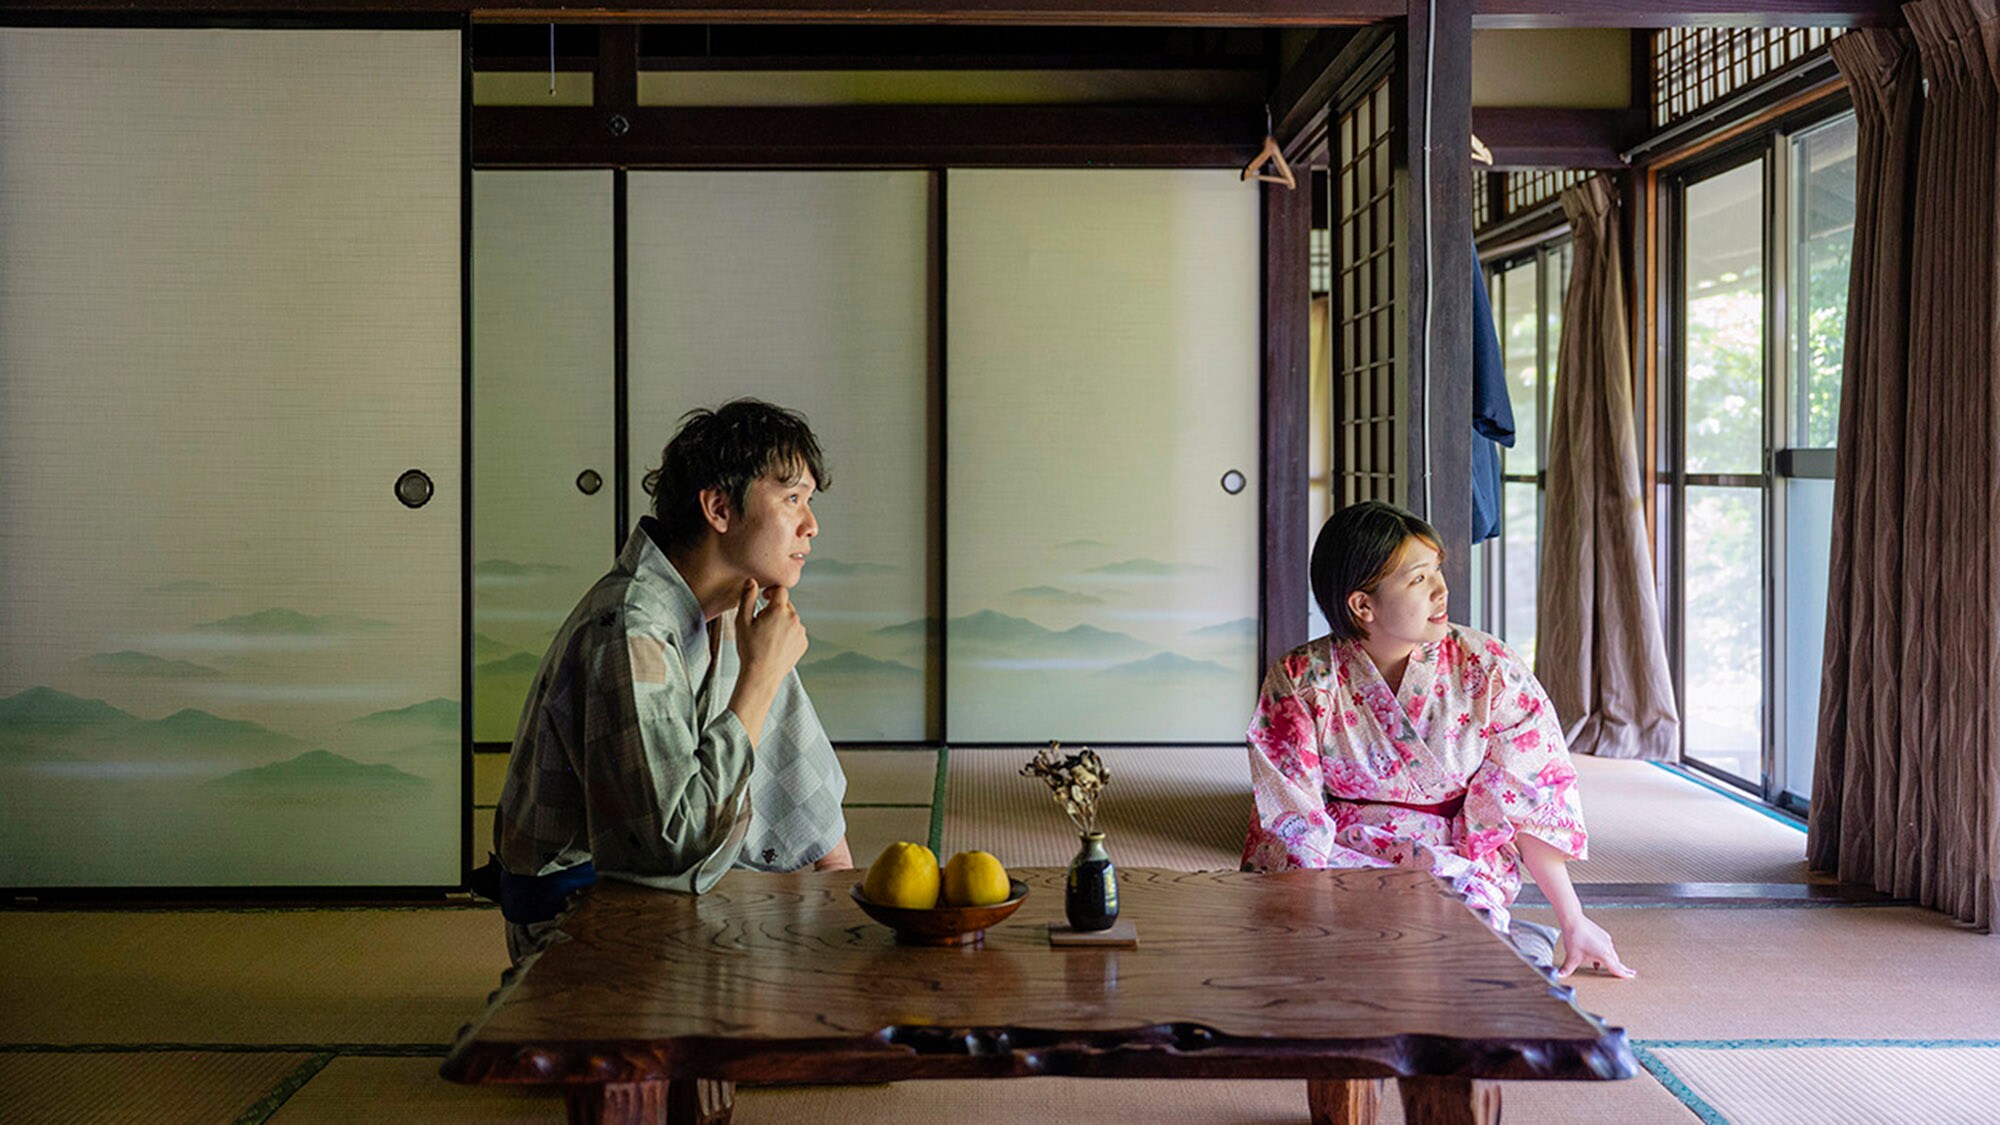 ・【日式房間】用五種感官享受您嚮往的鄉村生活。您可以感受到日式房間、天花板橫樑和泥土地板上雕刻的歷史。